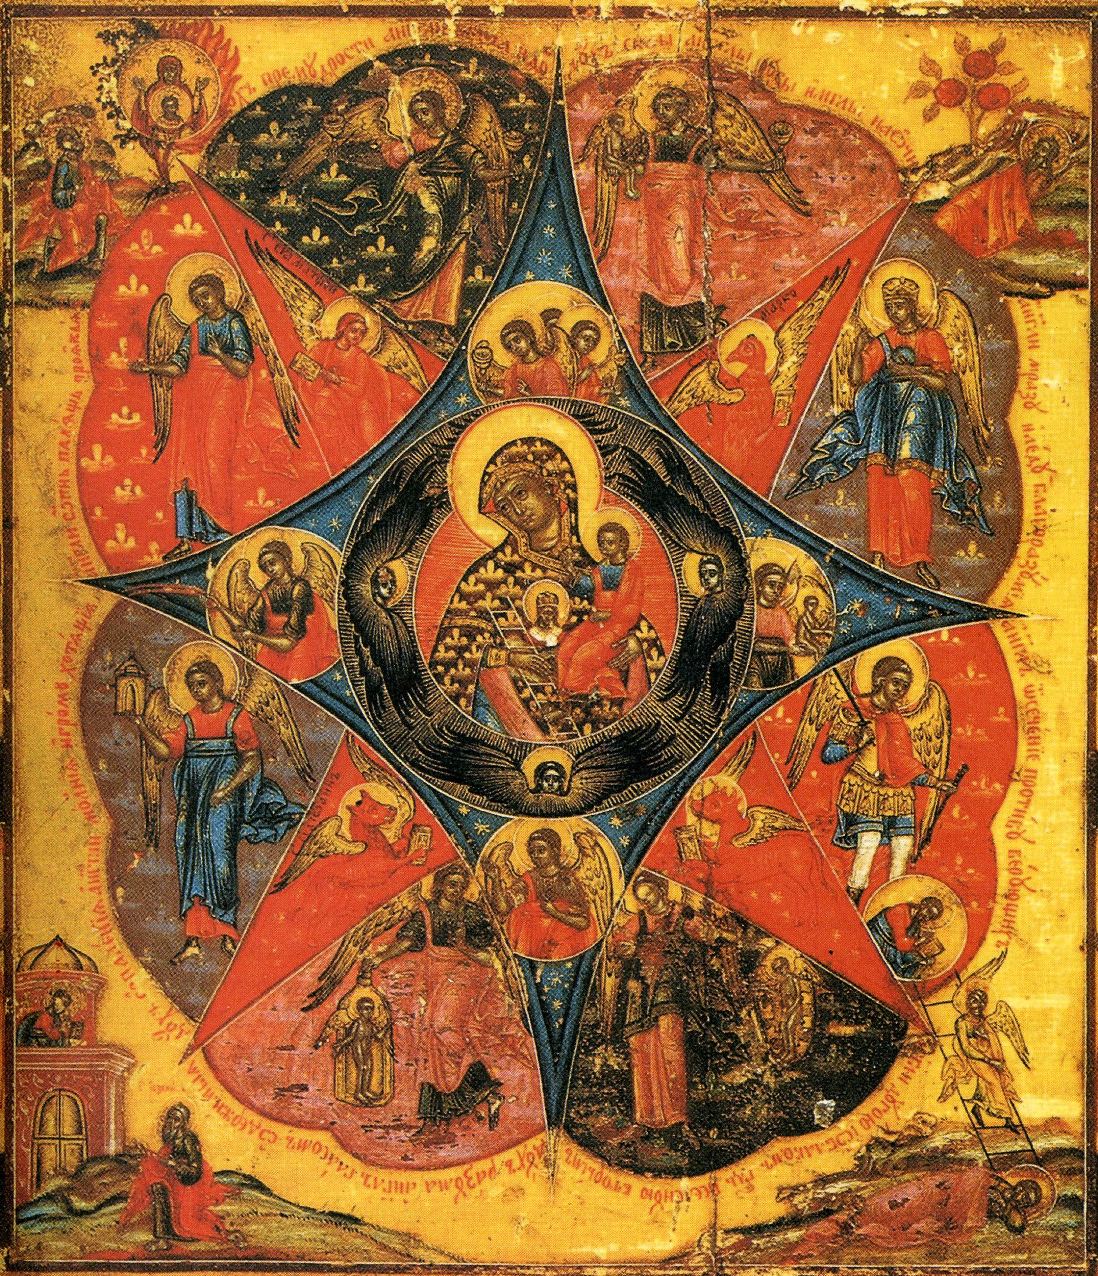 Икона Божией Матери "Неопалимая Купина"